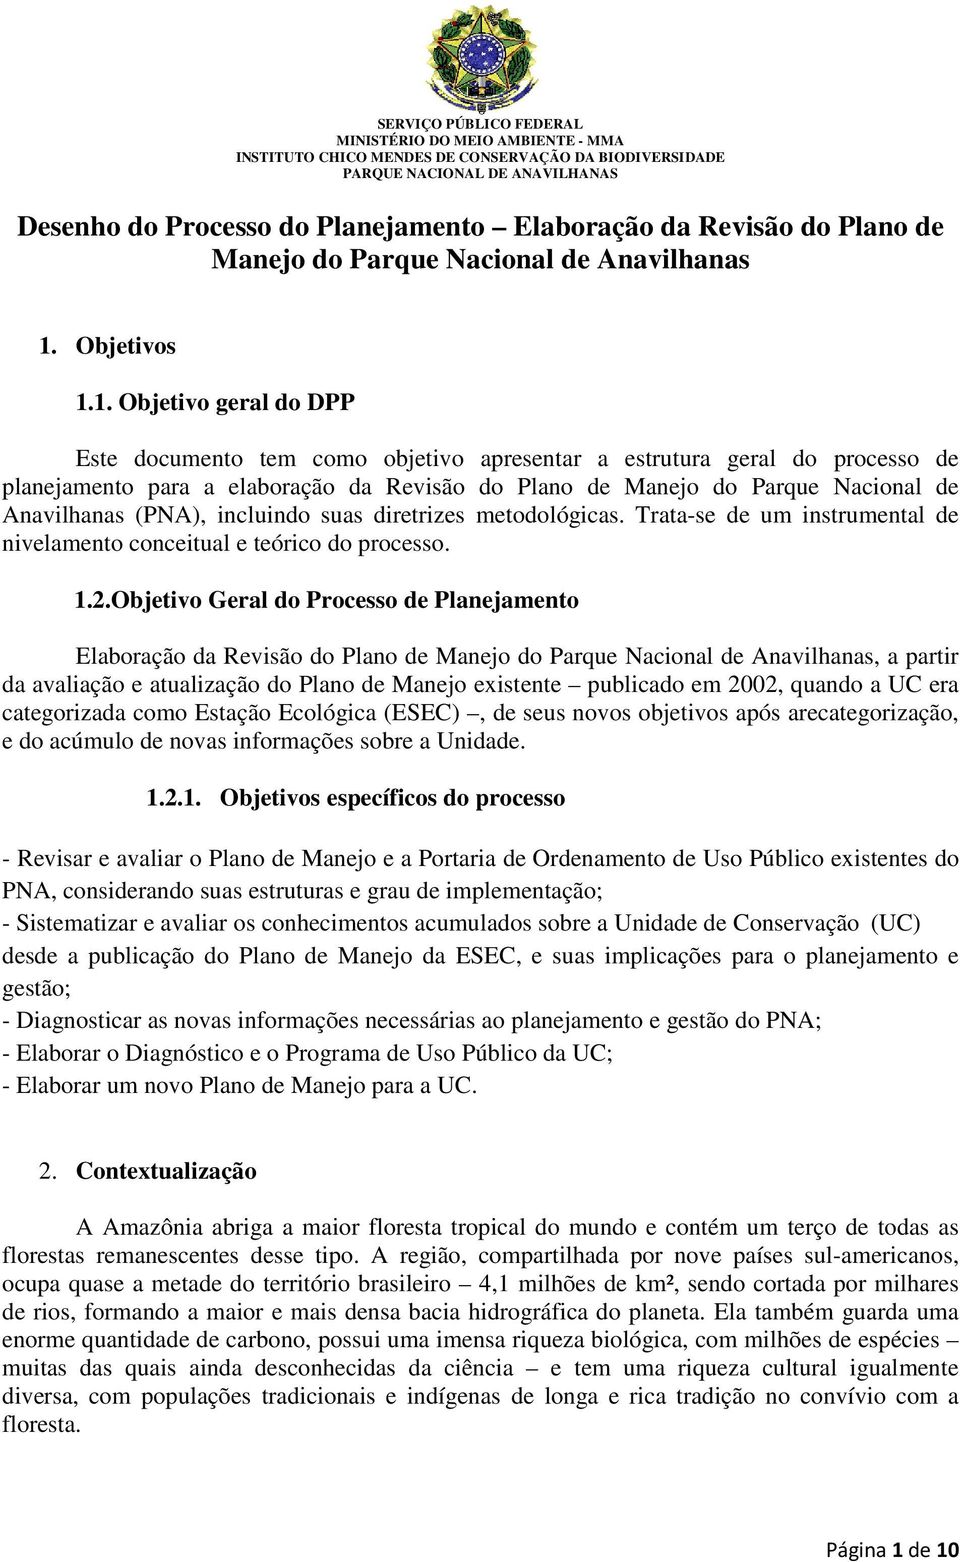 1. Objetivo geral do DPP Este documento tem como objetivo apresentar a estrutura geral do processo de planejamento para a elaboração da Revisão do Plano de Manejo do Parque Nacional de Anavilhanas